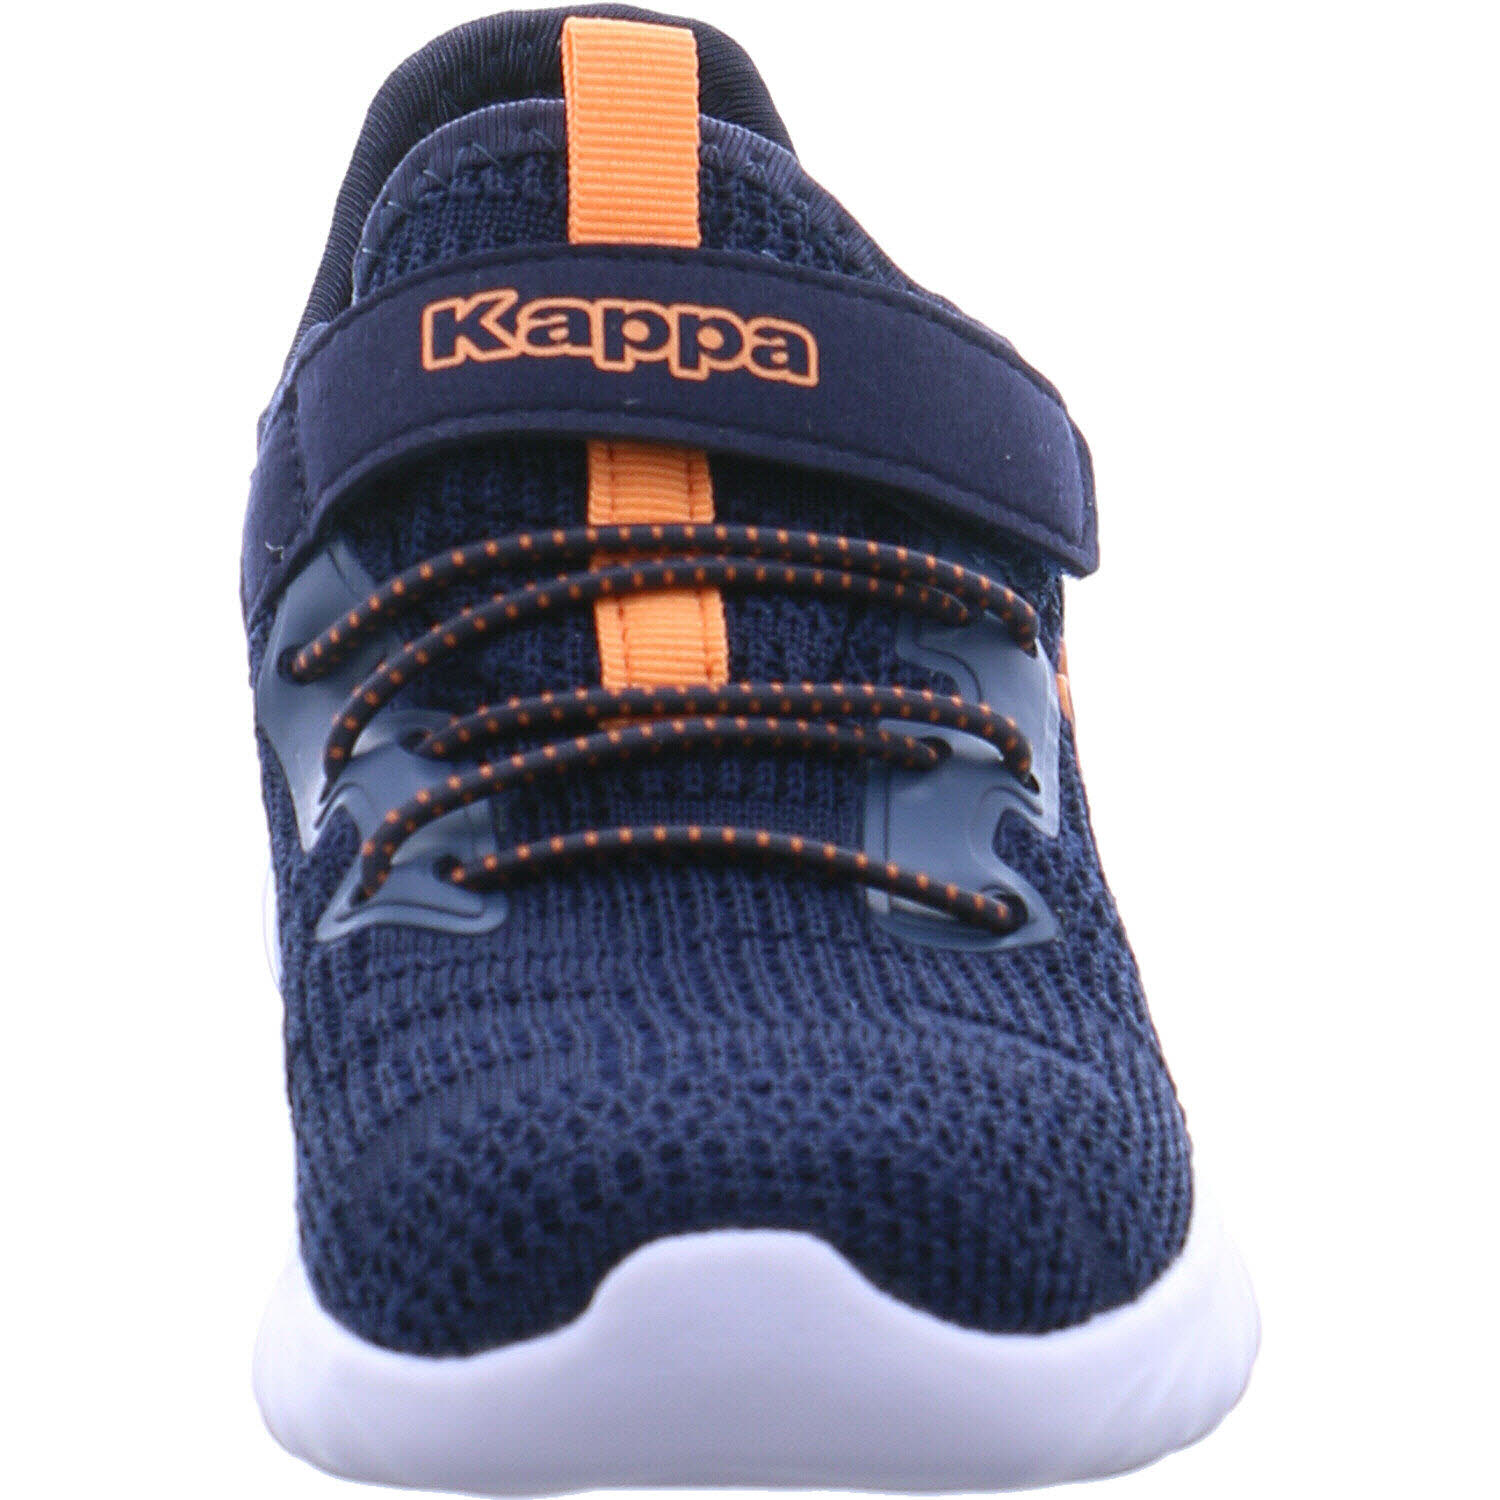 Kappa Sneaker low Stylecode: 260907 MFK Capilot MF K